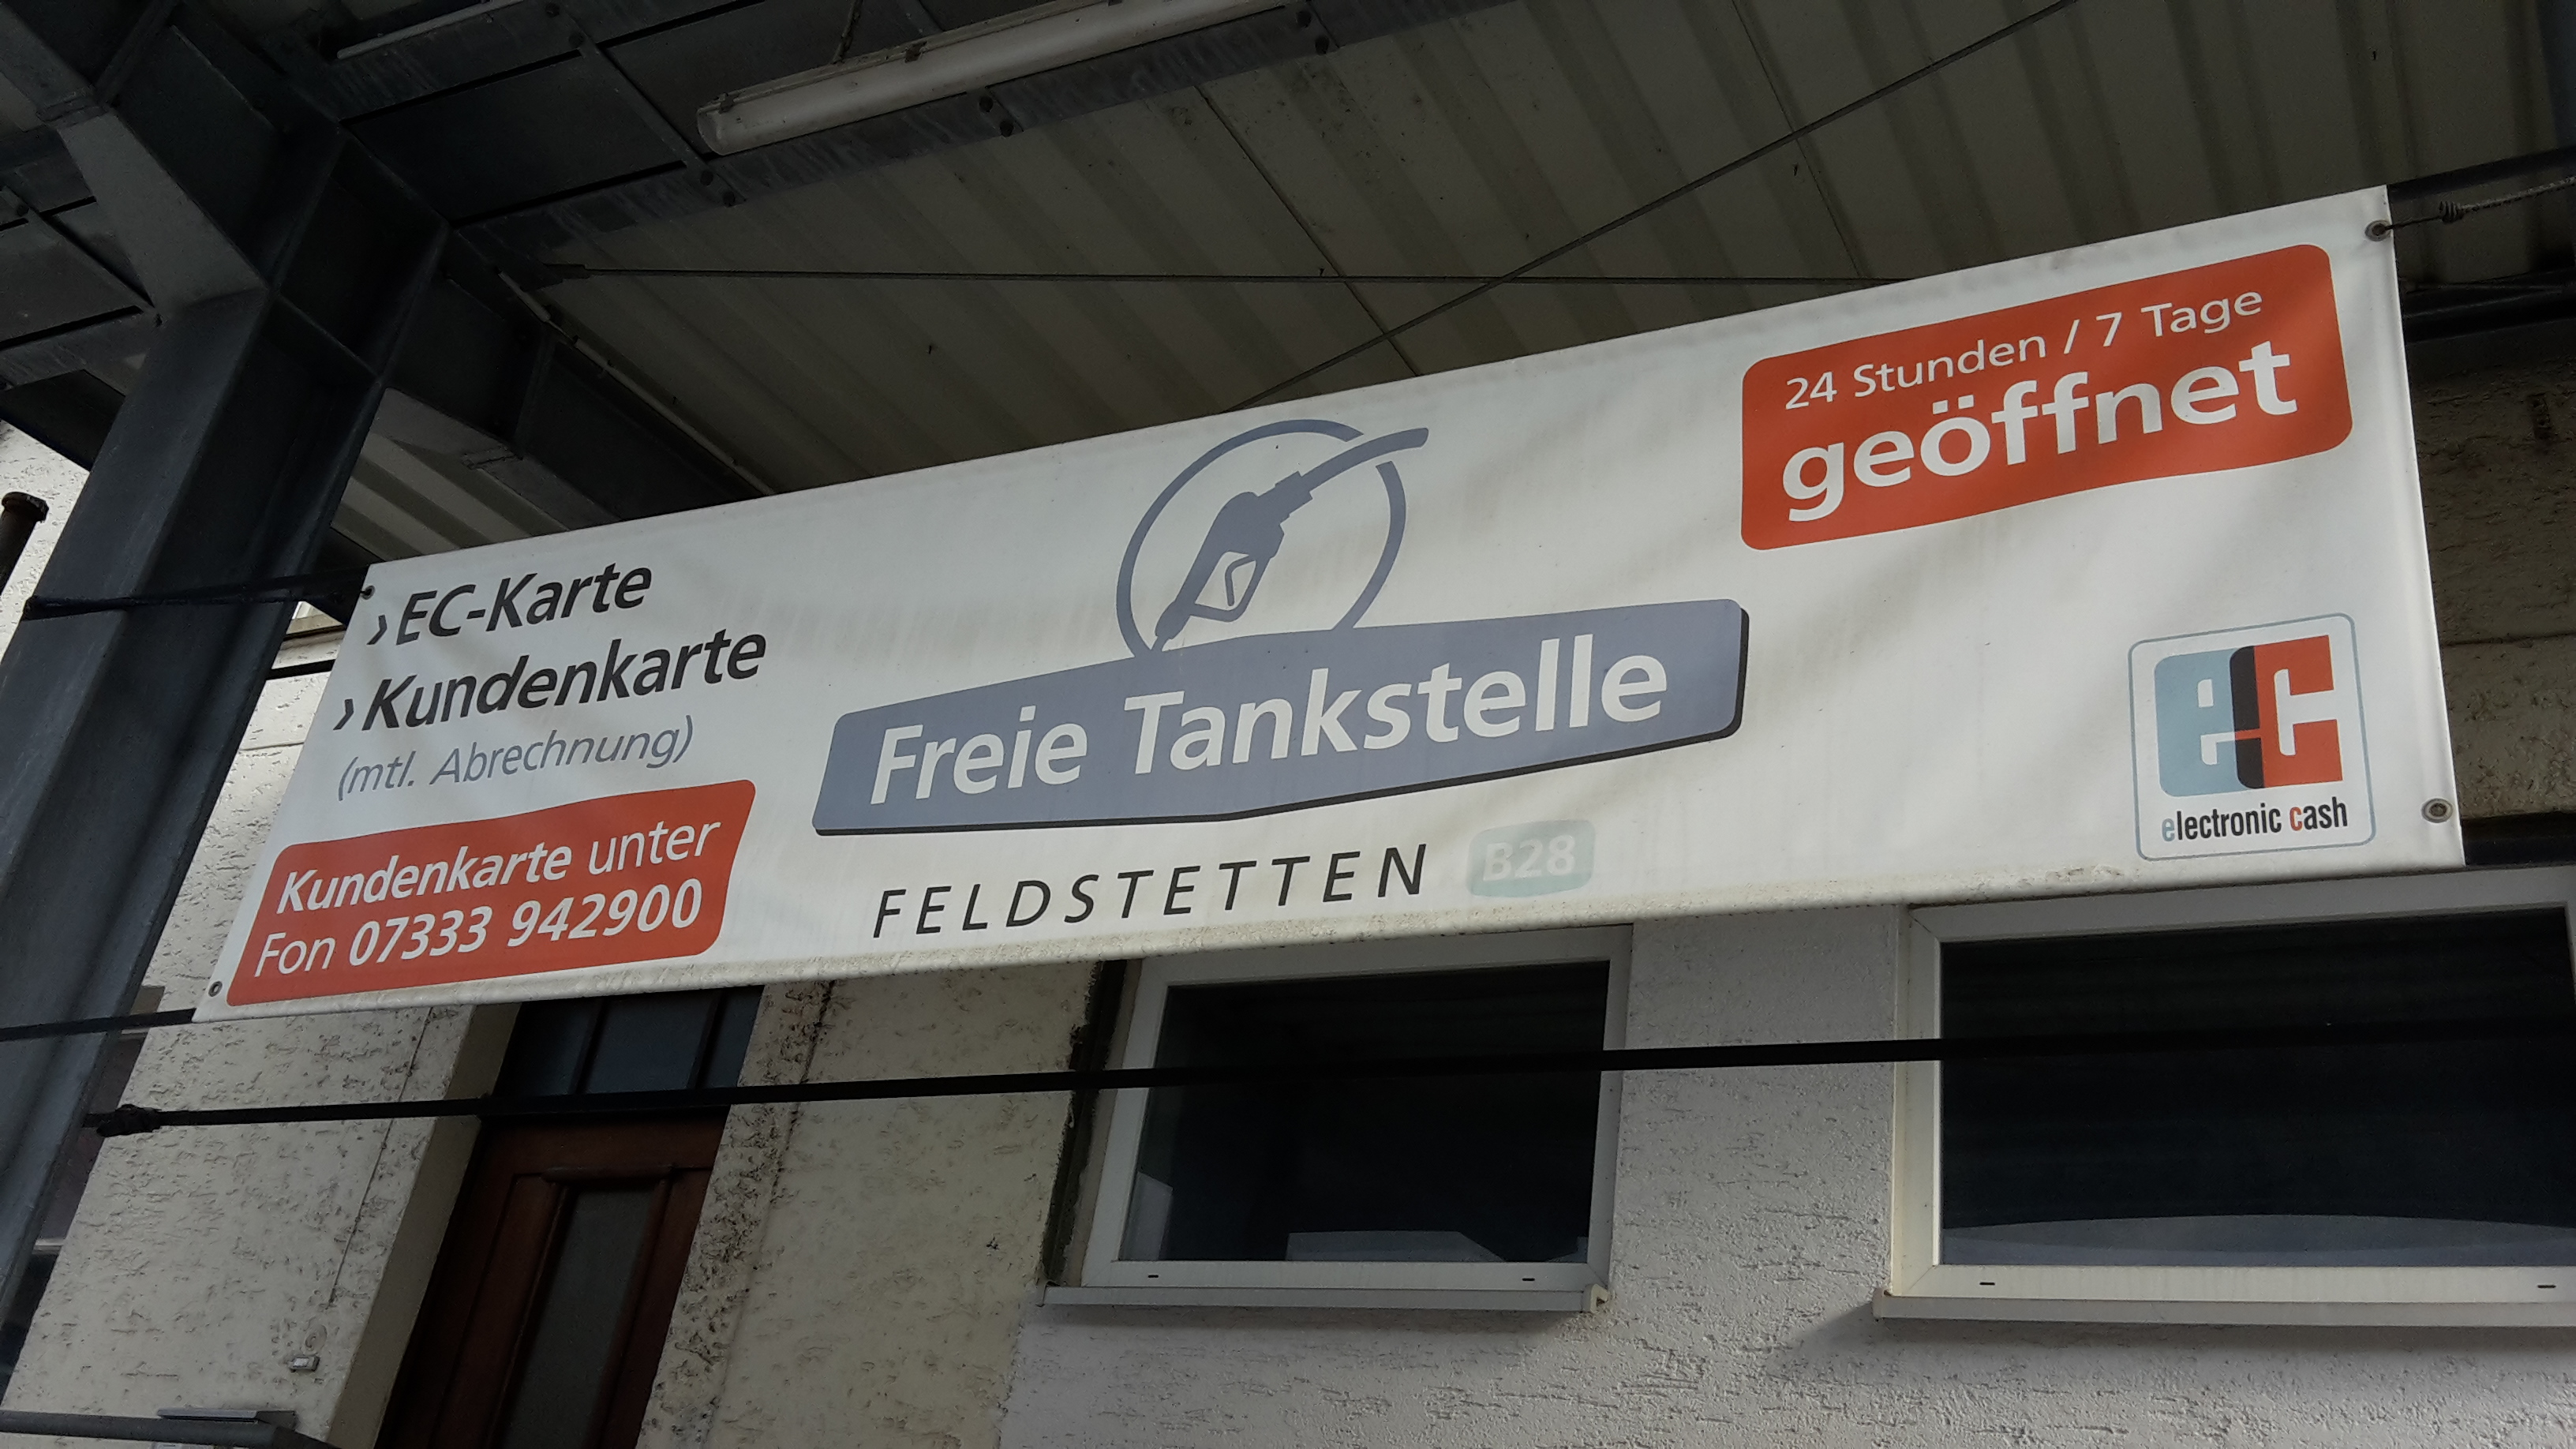 Bild 2 Freie Tankstelle Feldstetten in Laichingen